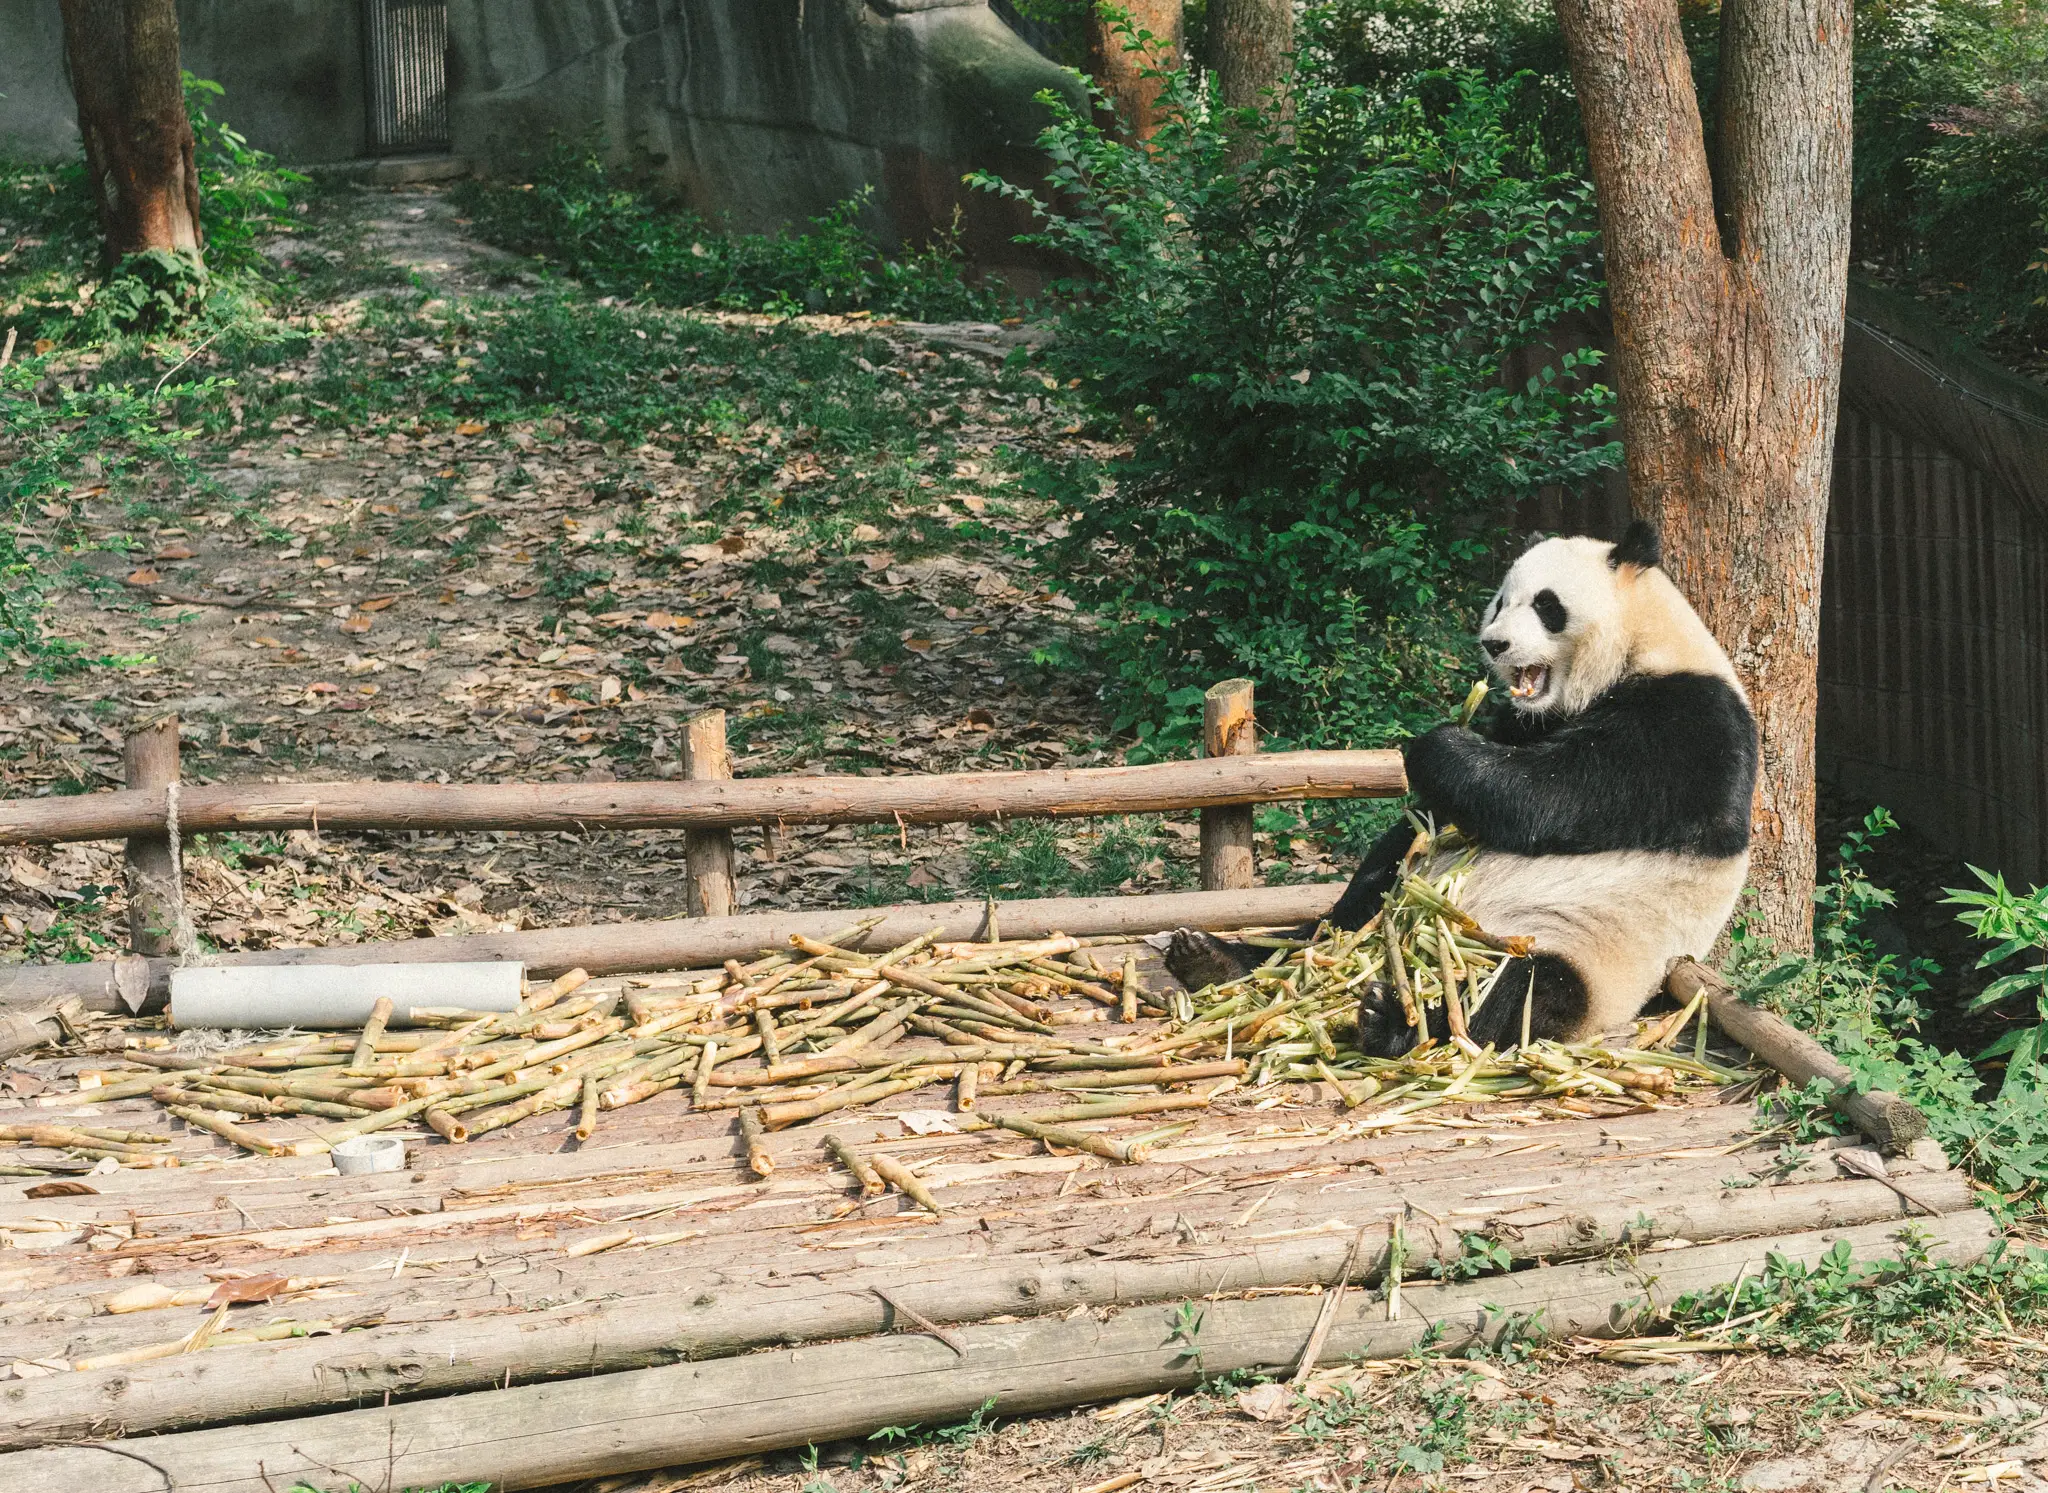 A panda munchin' on some bamboo at the Chengdu Panda Base